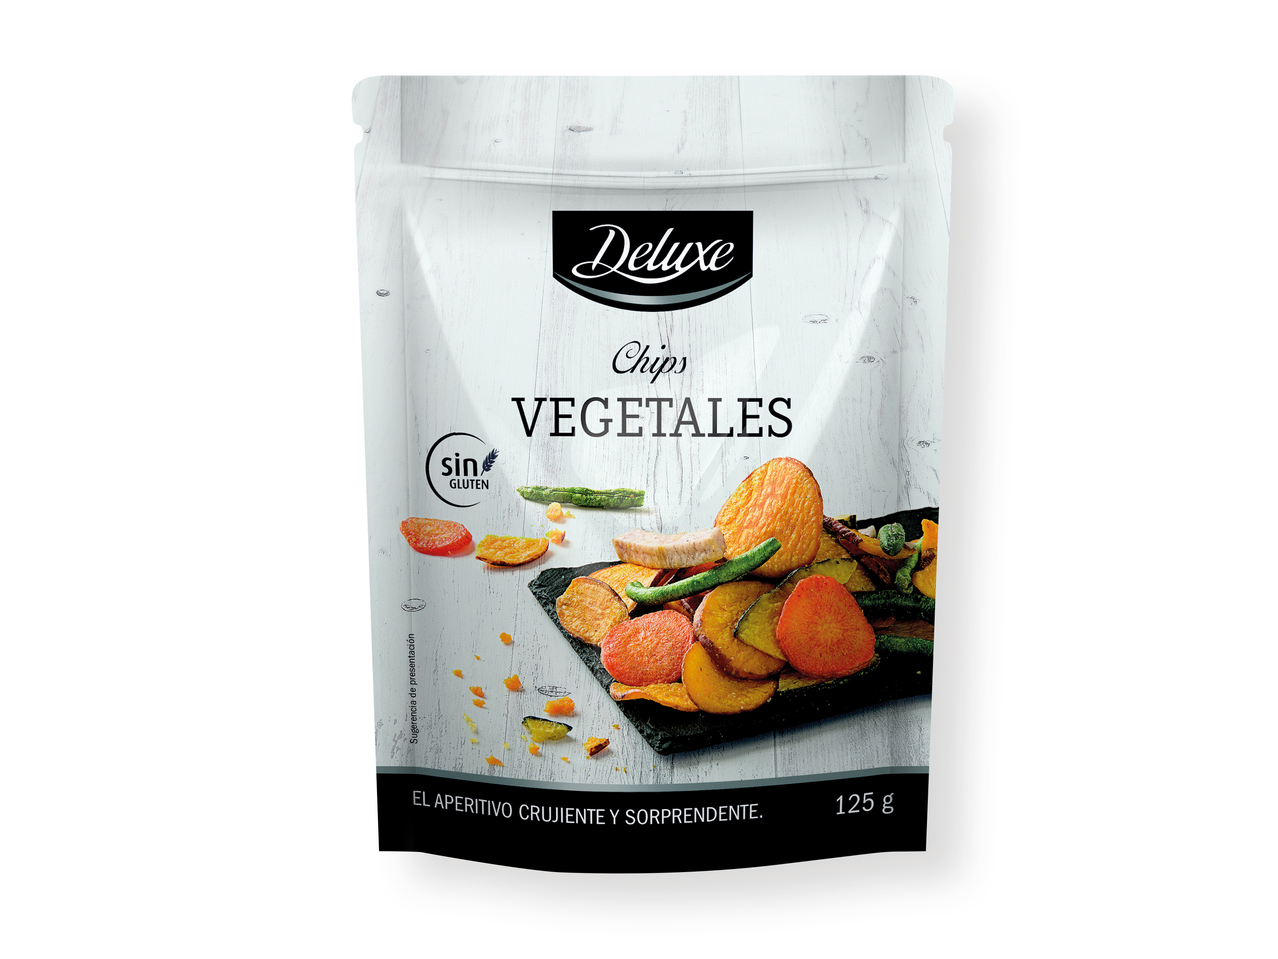 "Deluxe" Chips vegetales